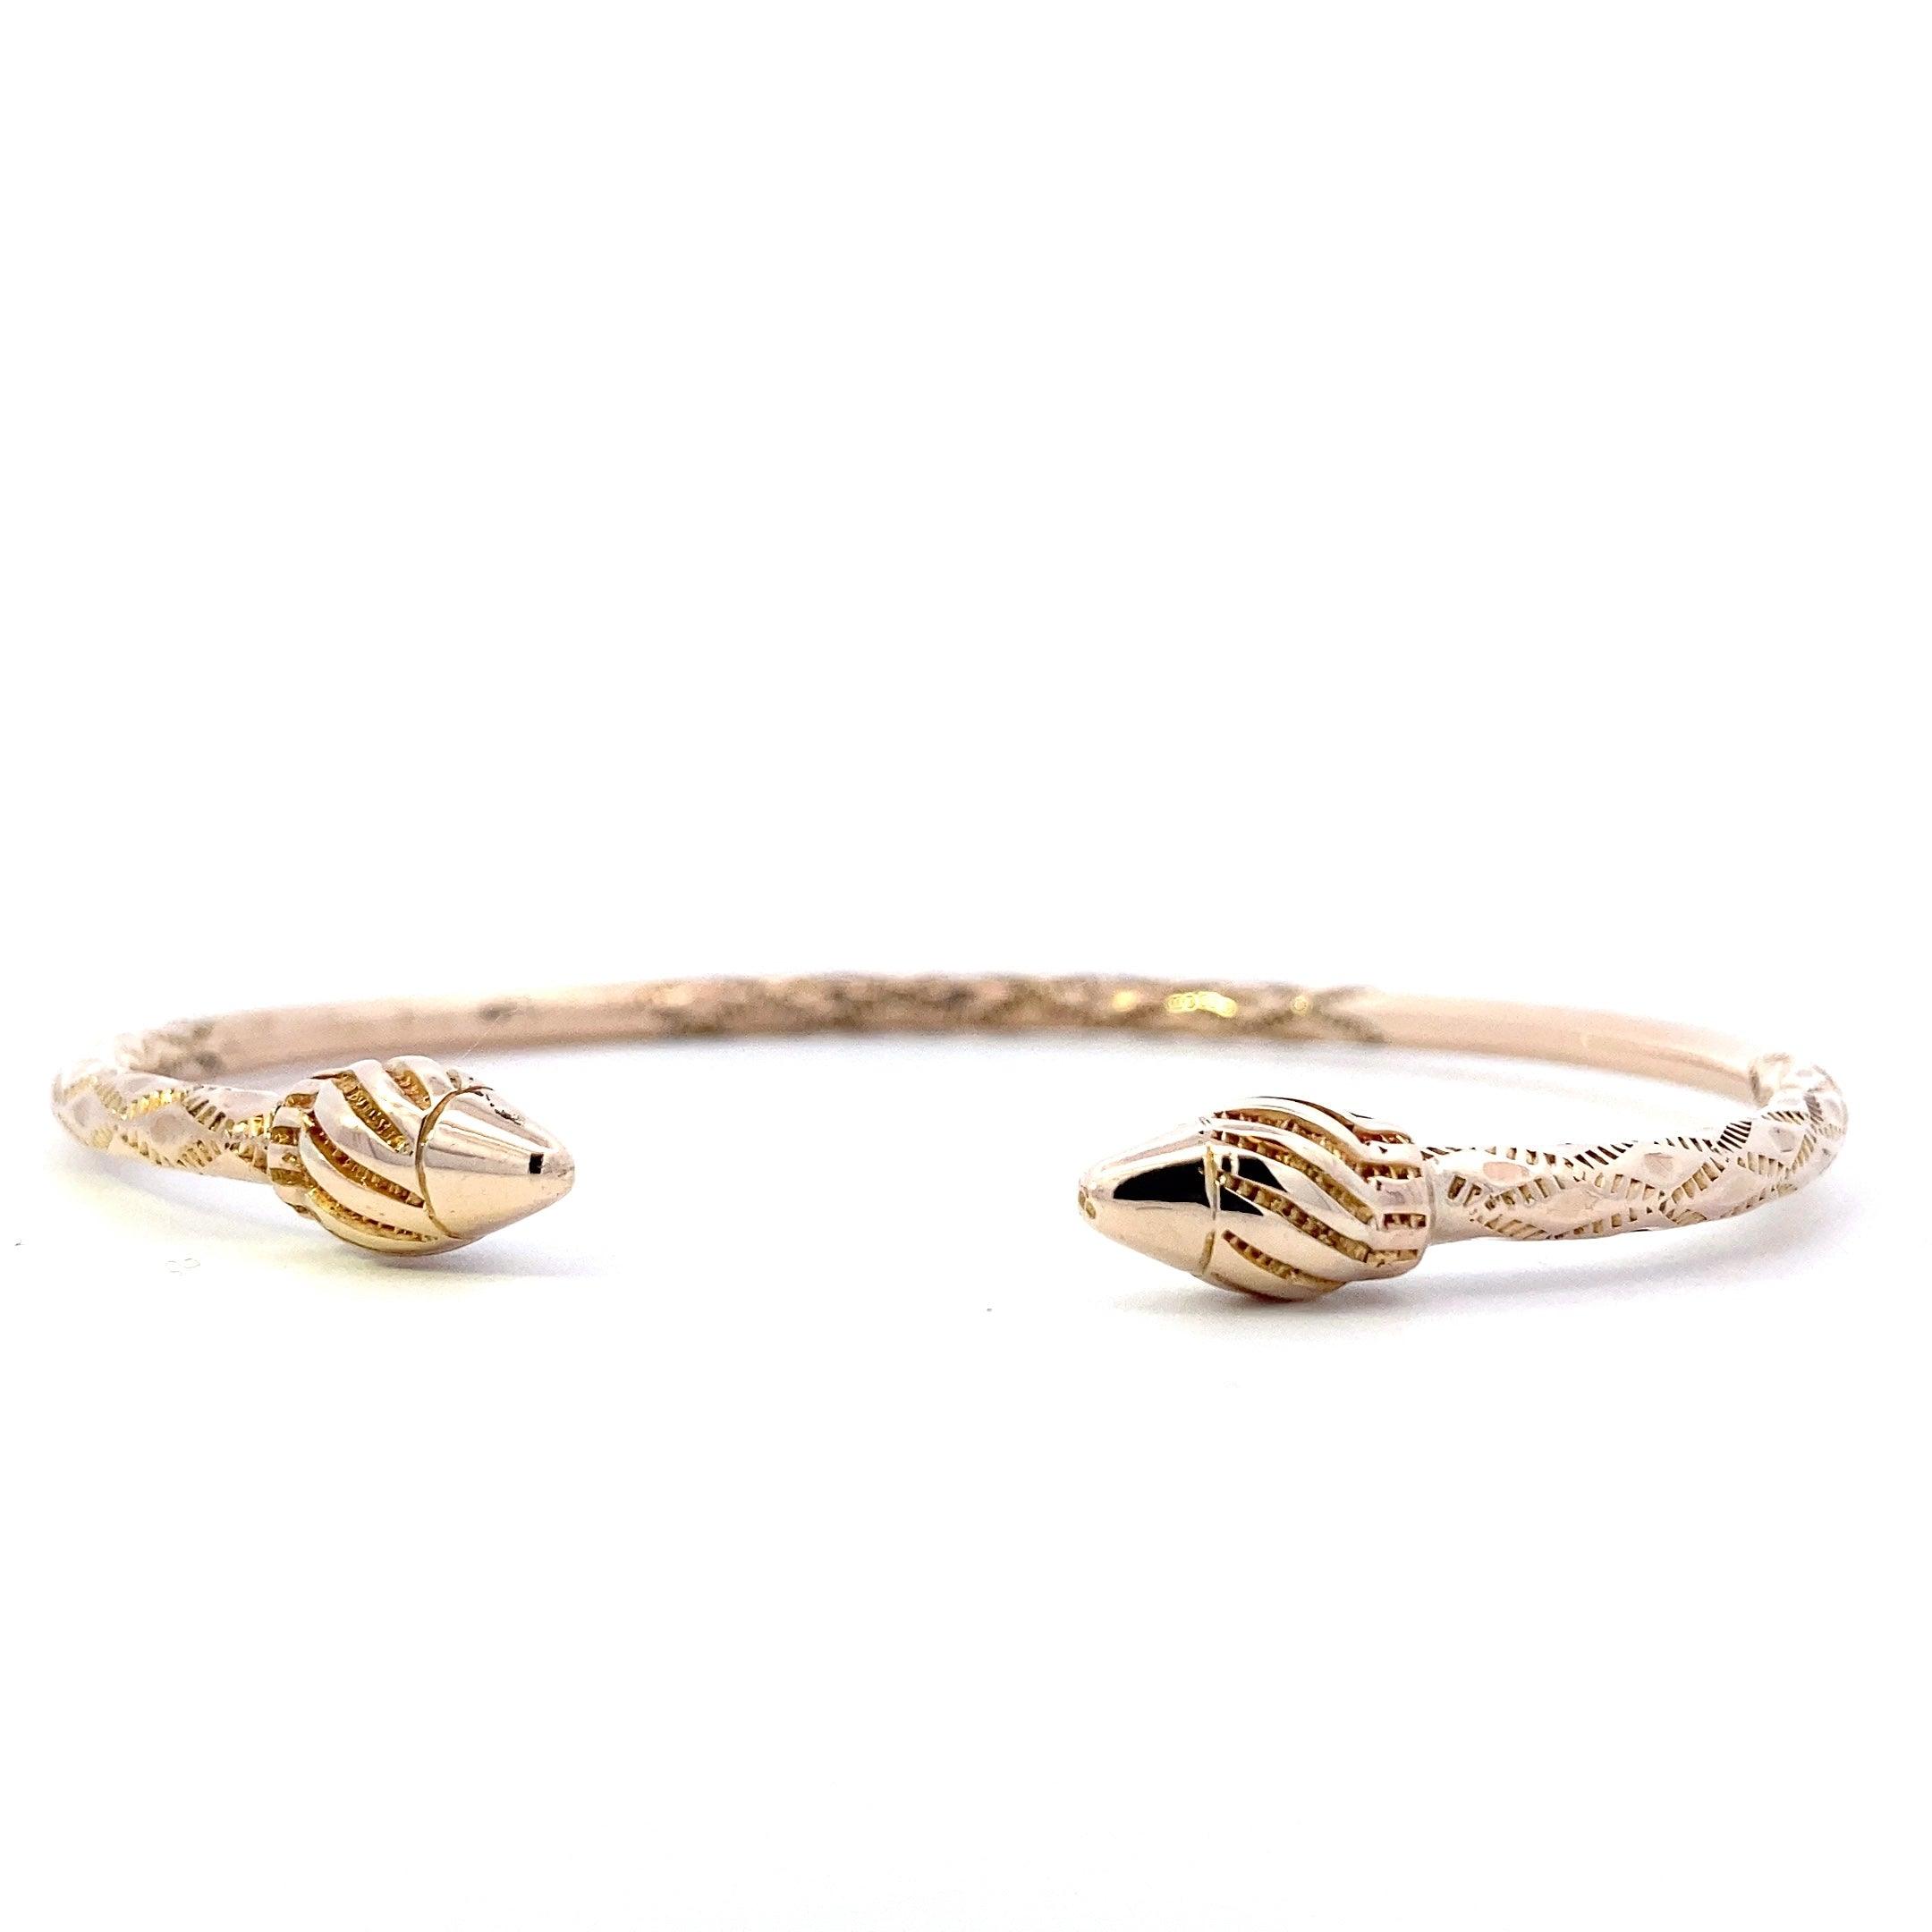 10k Gold Bangle Bracelet Swirl Design | eBay